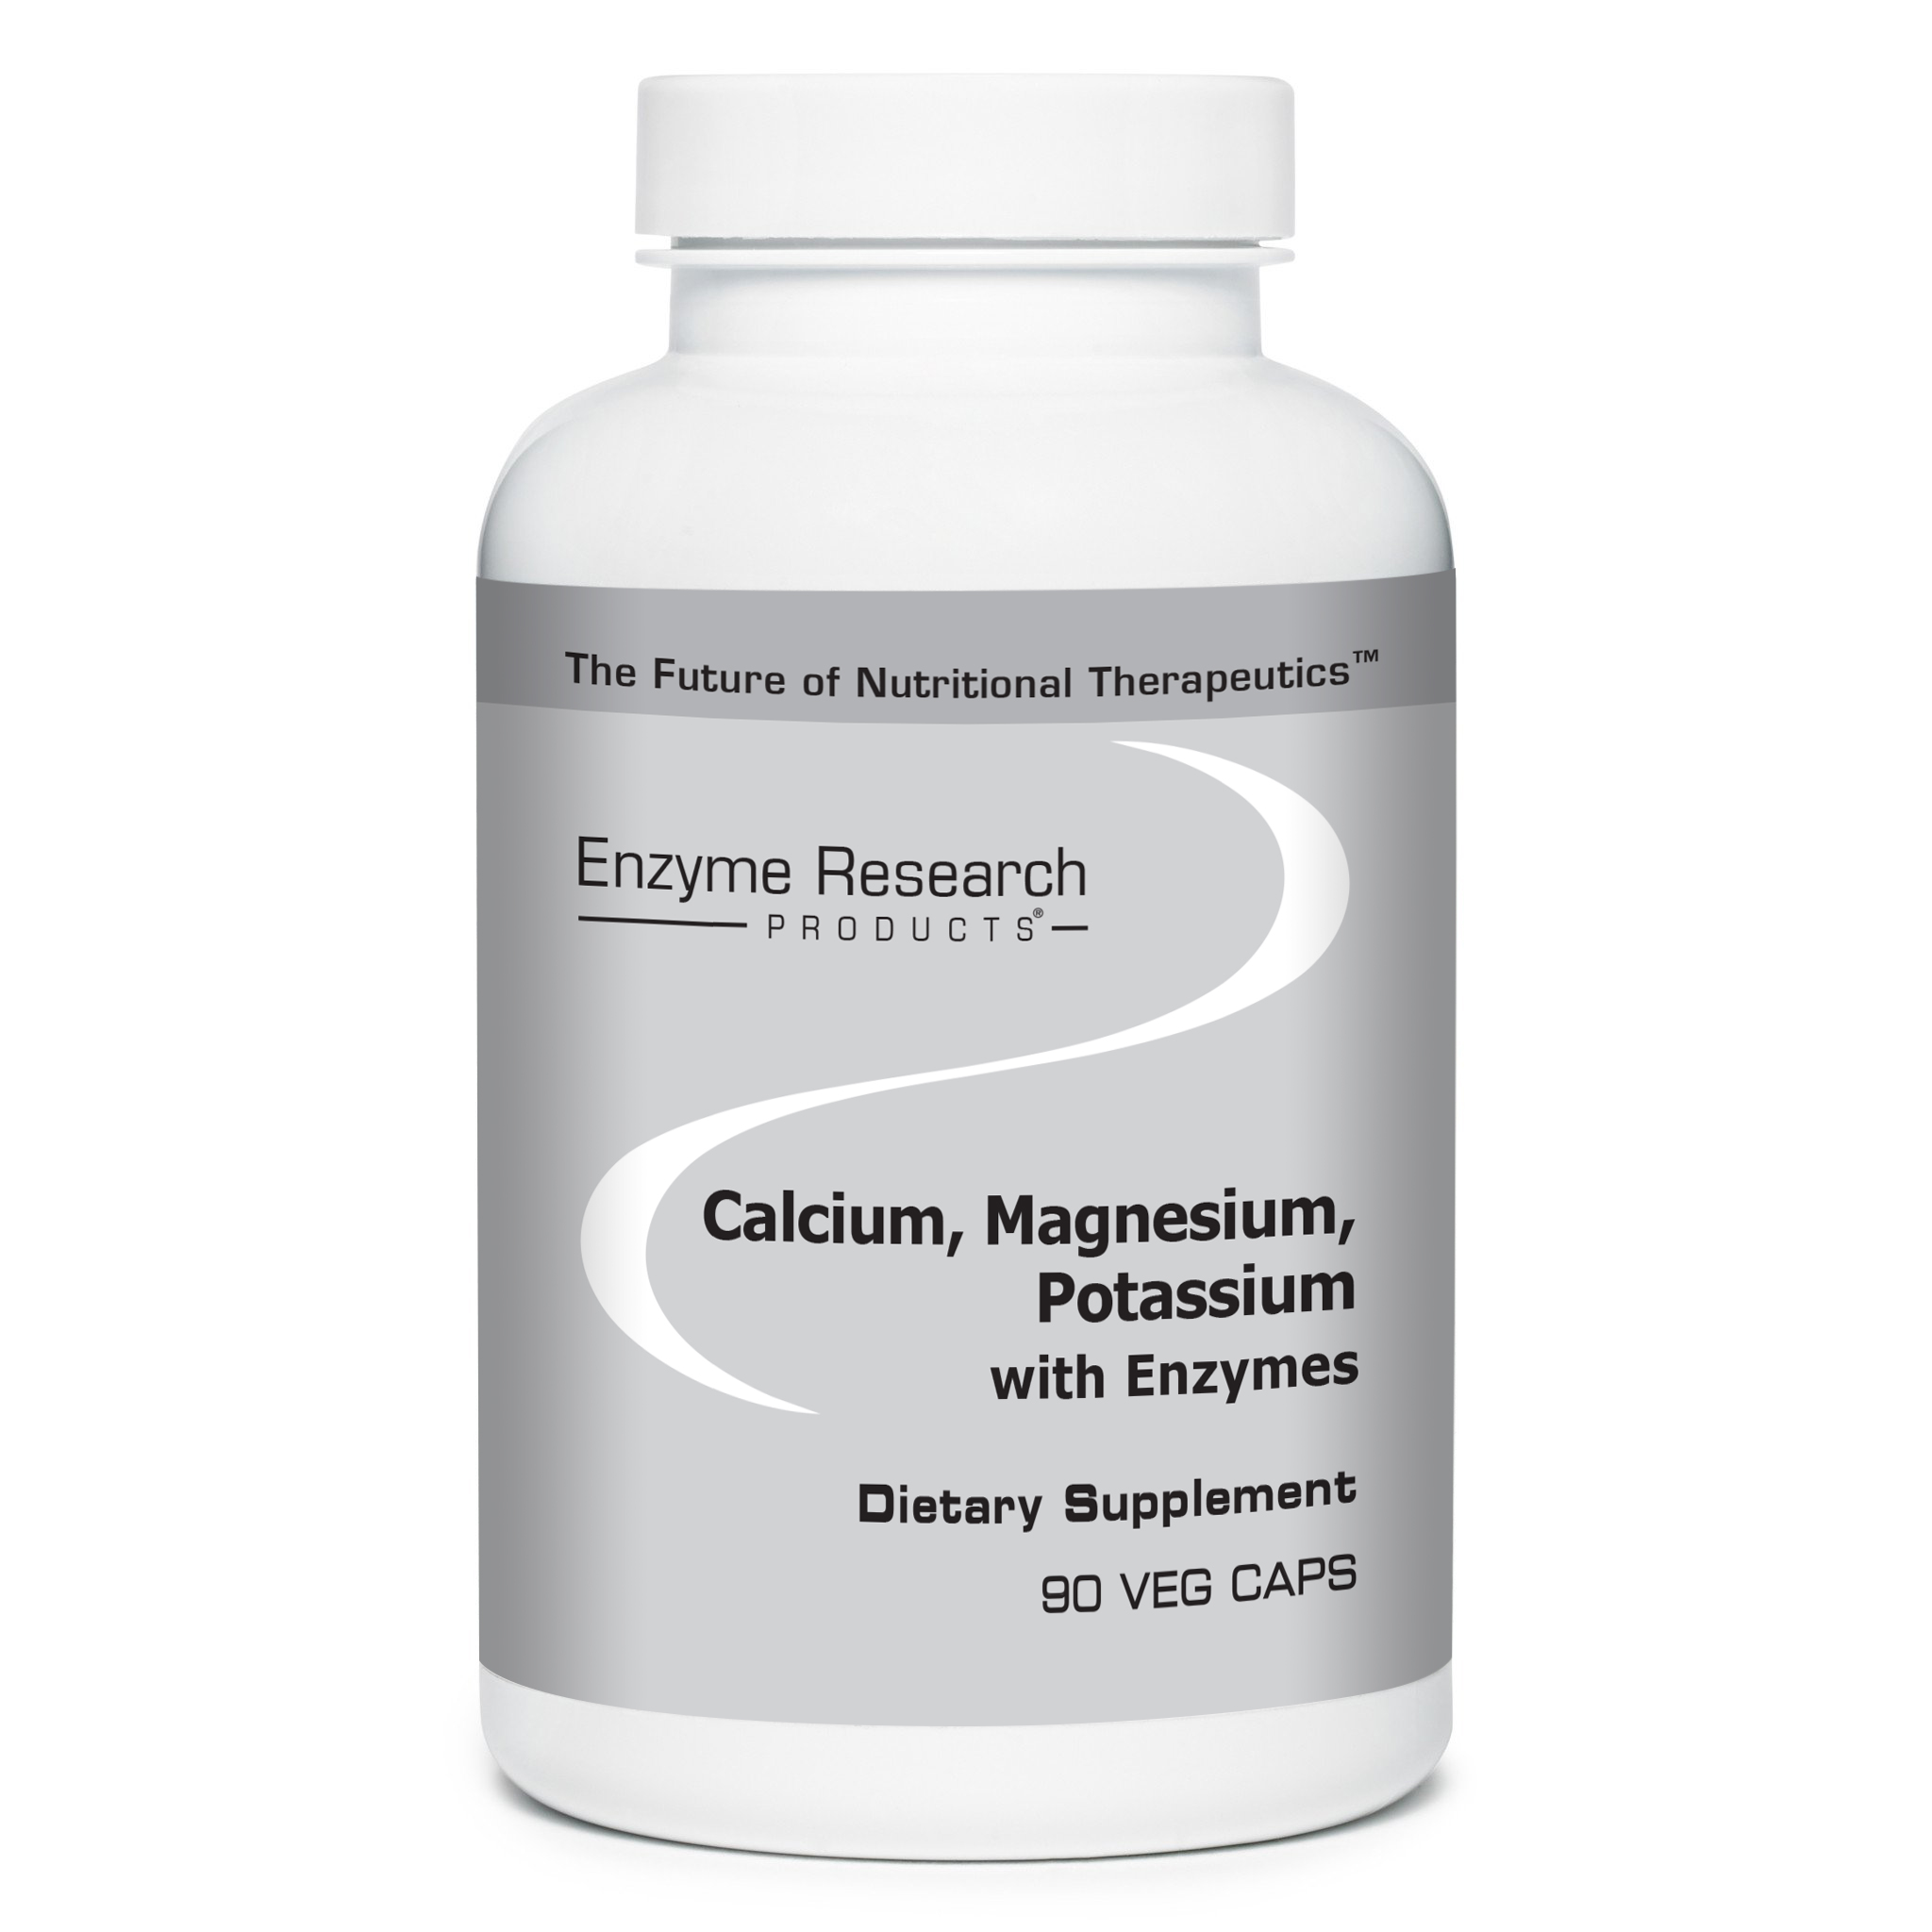 Enzyme Research Products | Calcium, Magnesium, Potassium